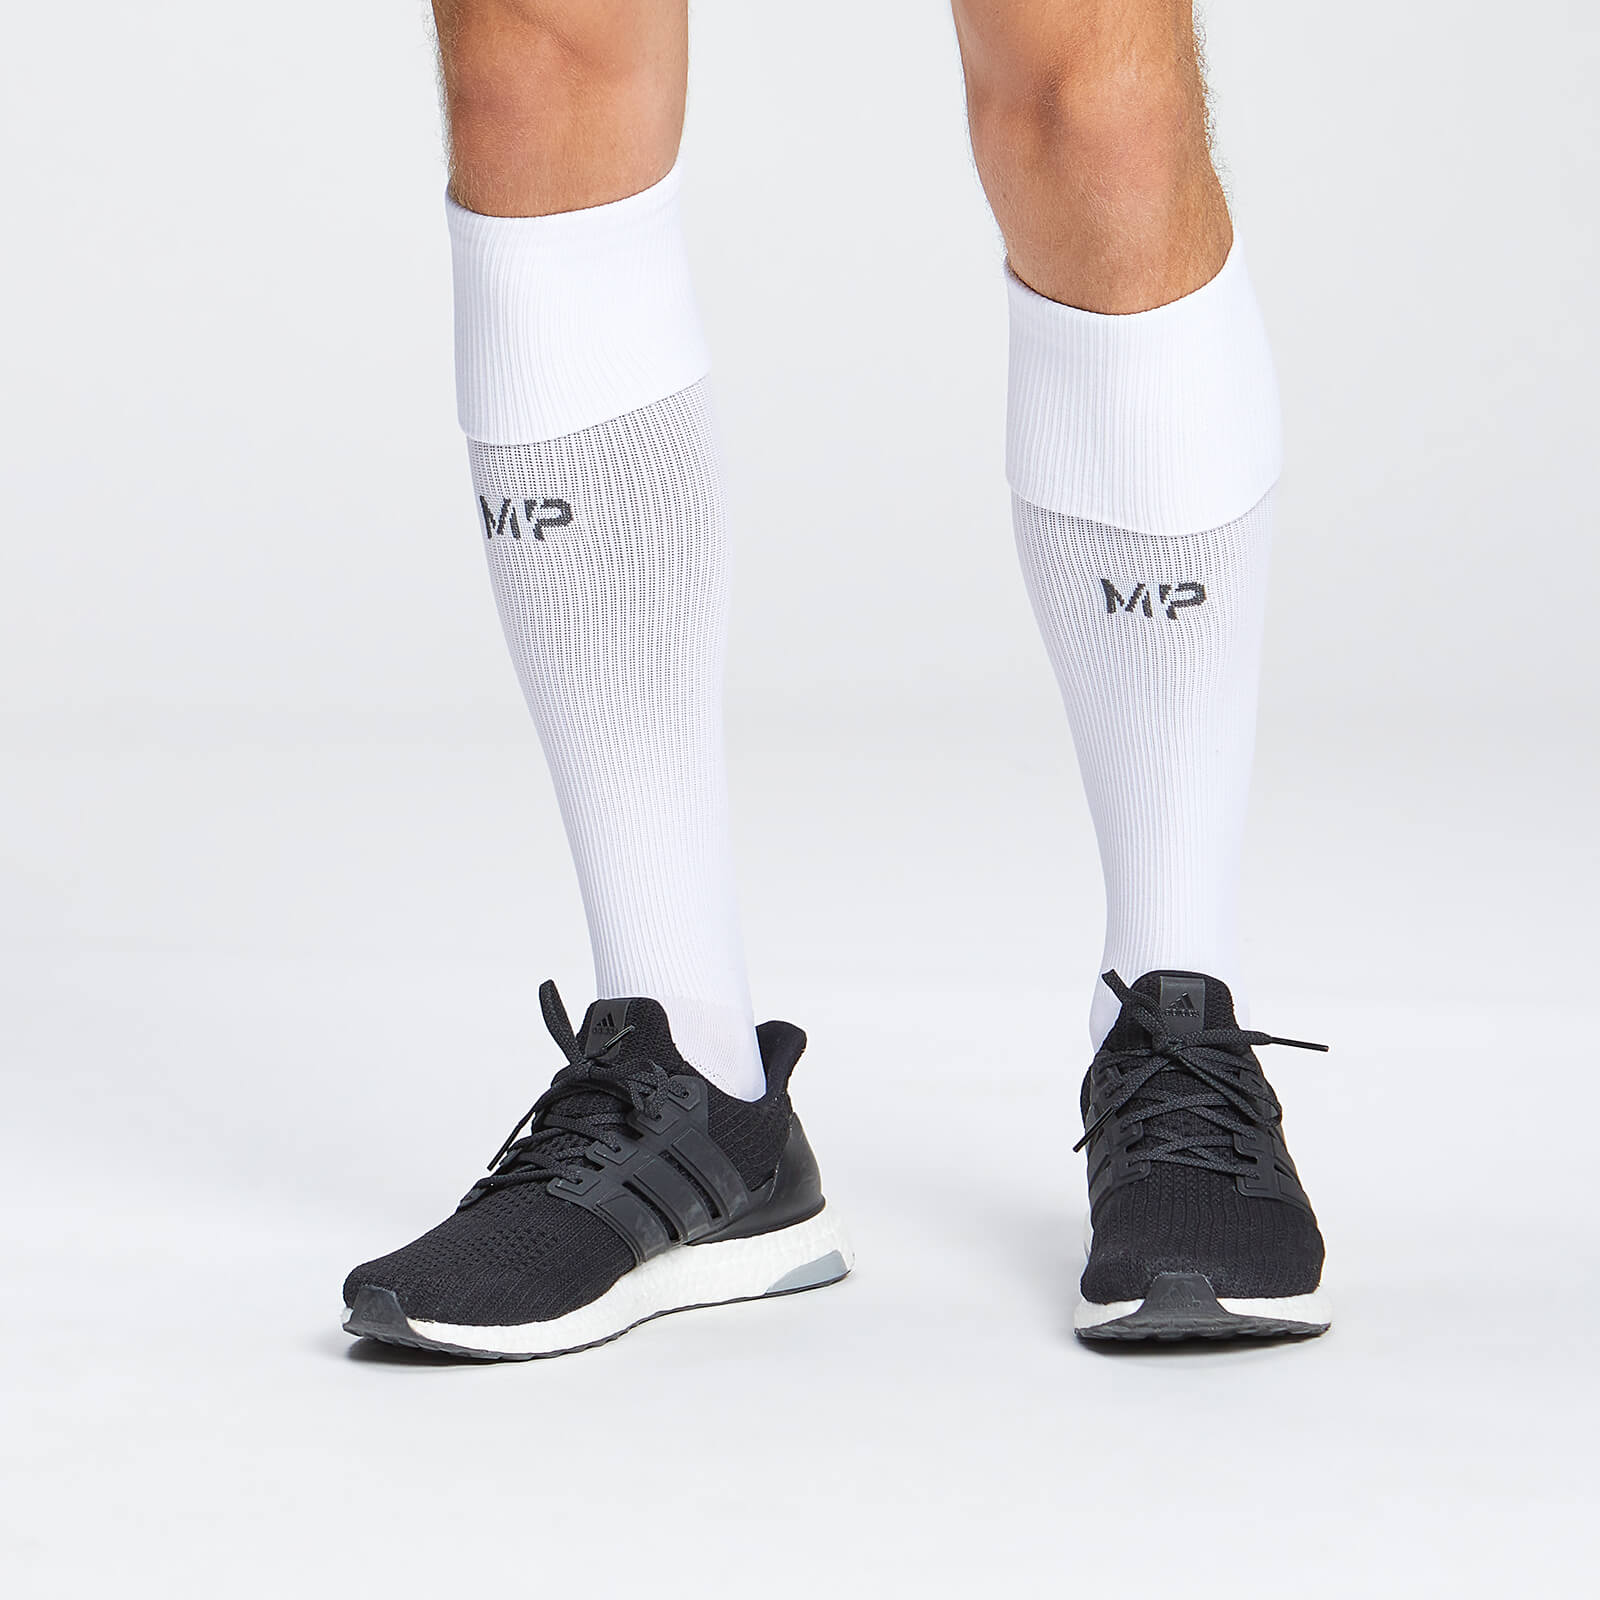 Chaussettes de football pleine longueur MP – Blanc - UK 3-6